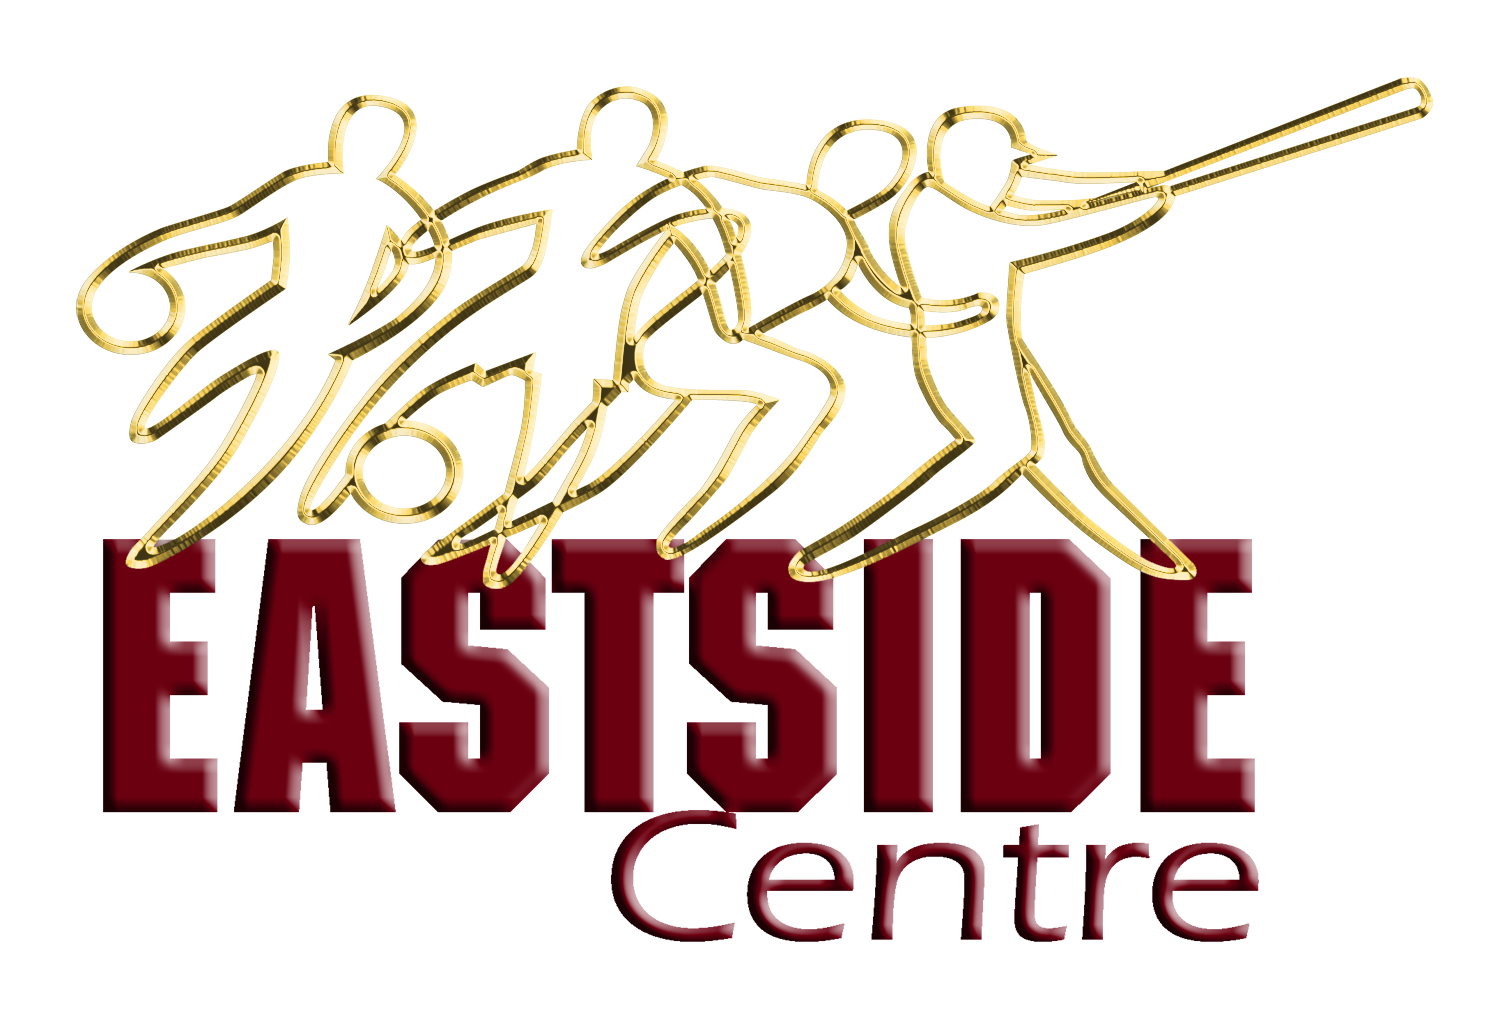 EastSide Centre